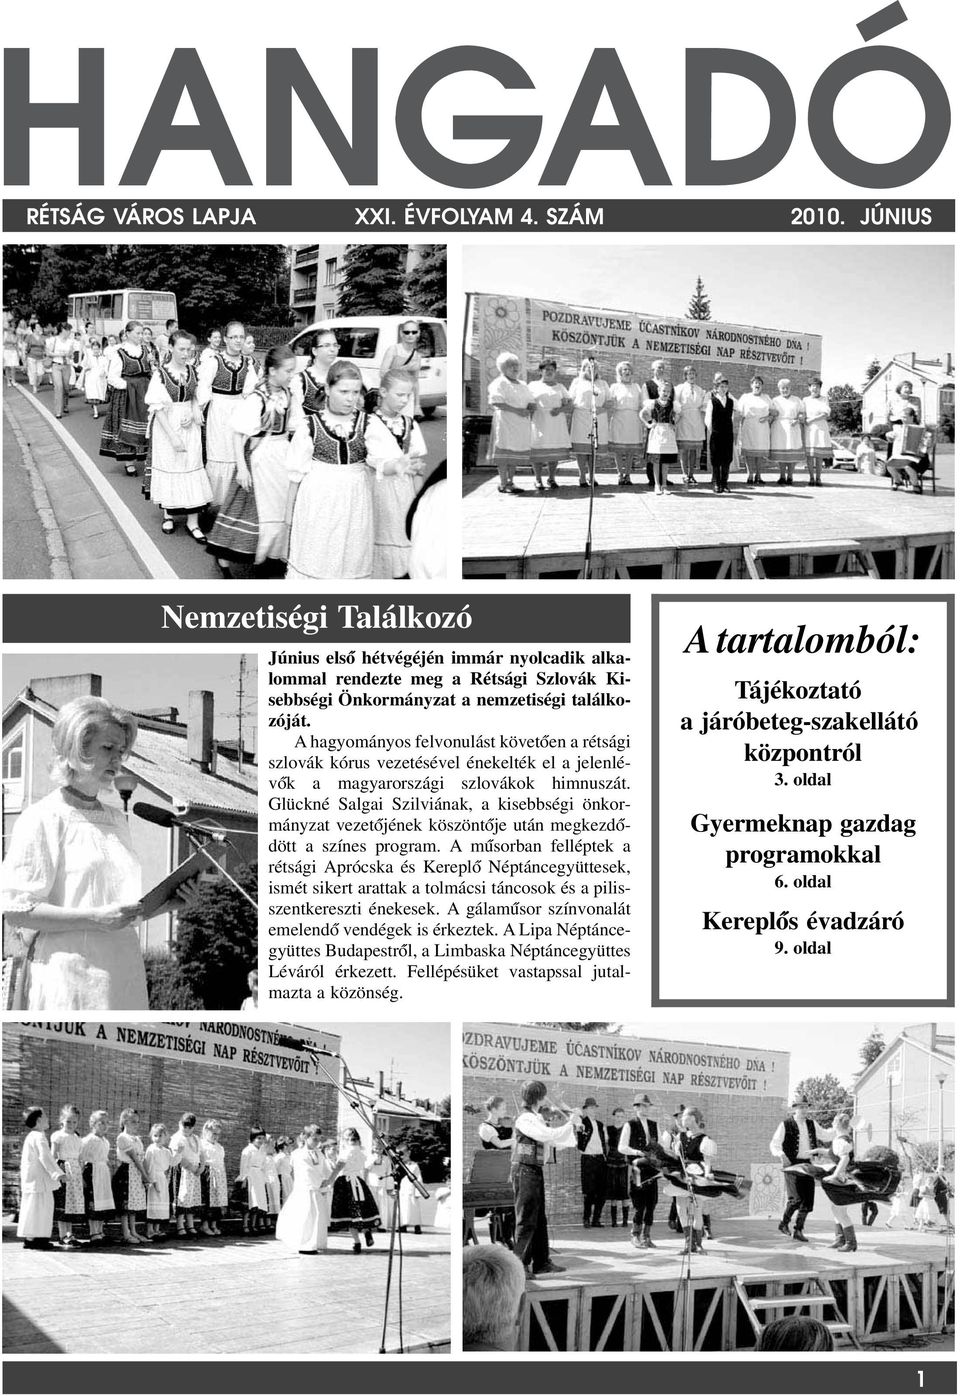 A hagyományos felvonulást követ óen a rétsági szlovák kórus vezetésével énekelték el a jelenlévók a magyarországi szlovákok himnuszát.